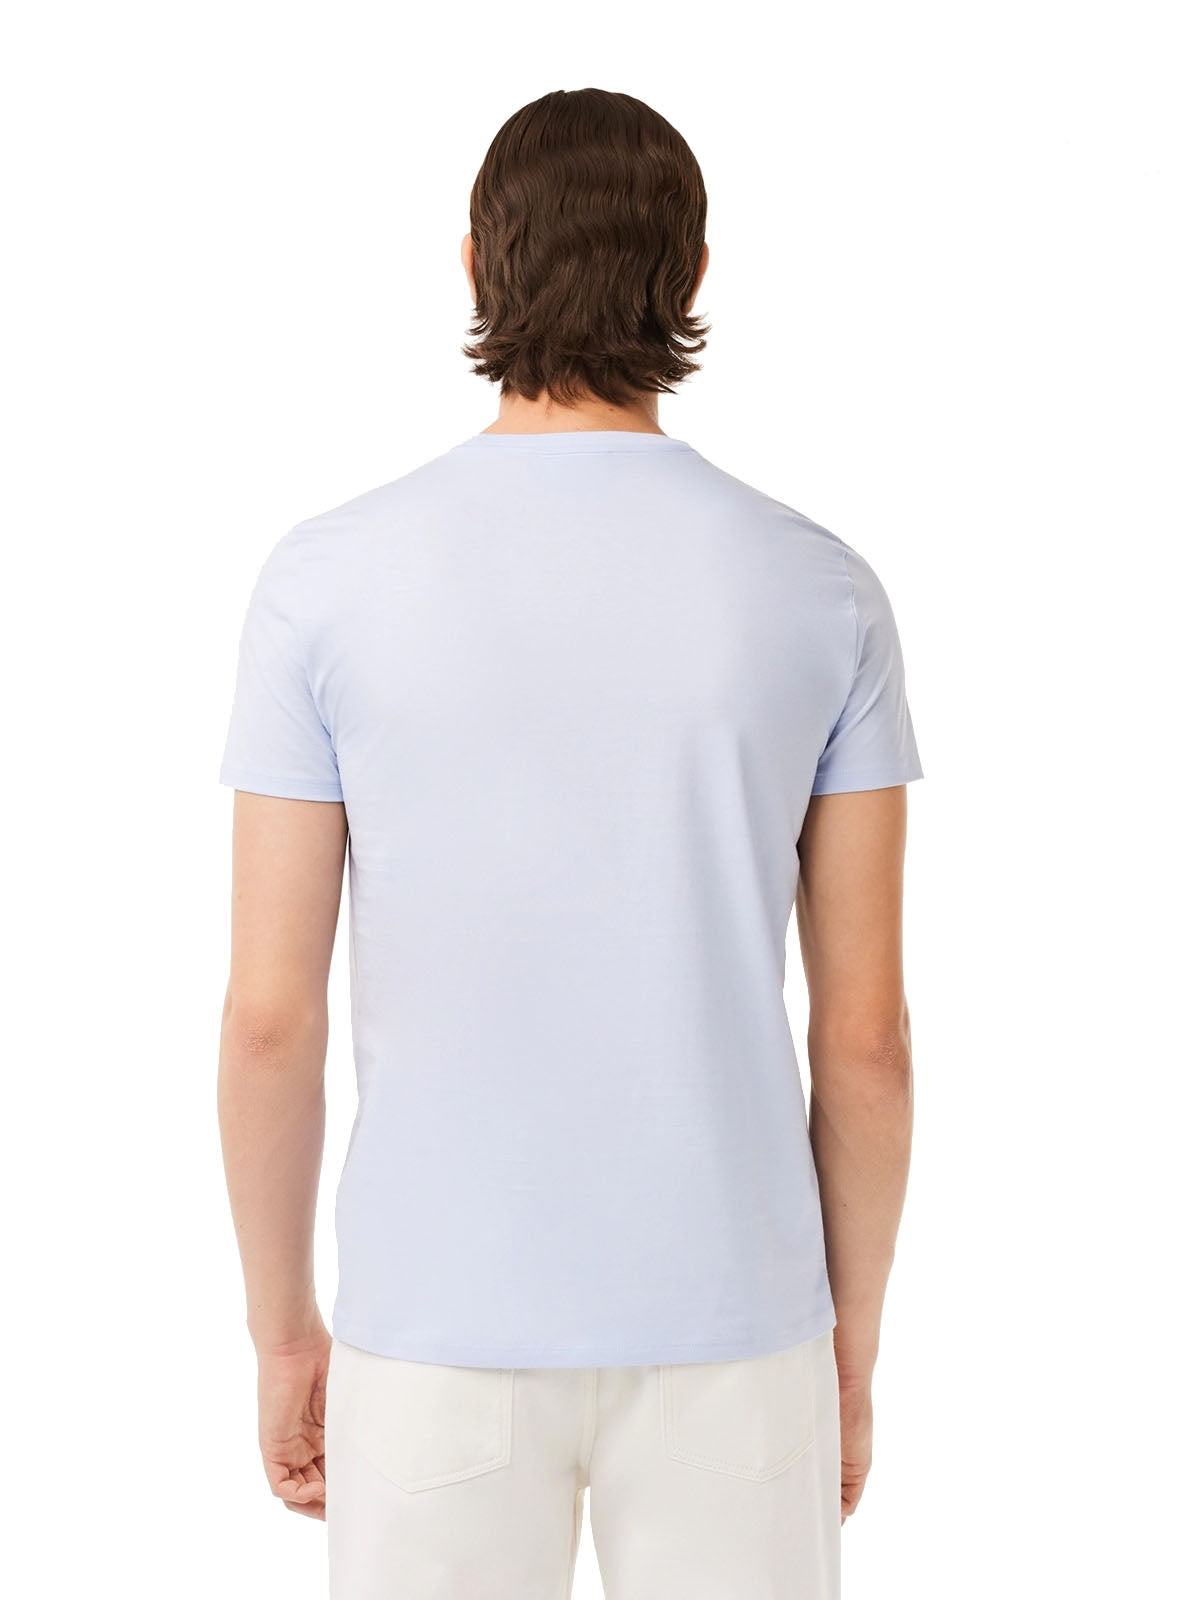 T-shirt Uomo Lacoste - T-Shirt A Girocollo In Jersey Di Cotone Pima - Celeste